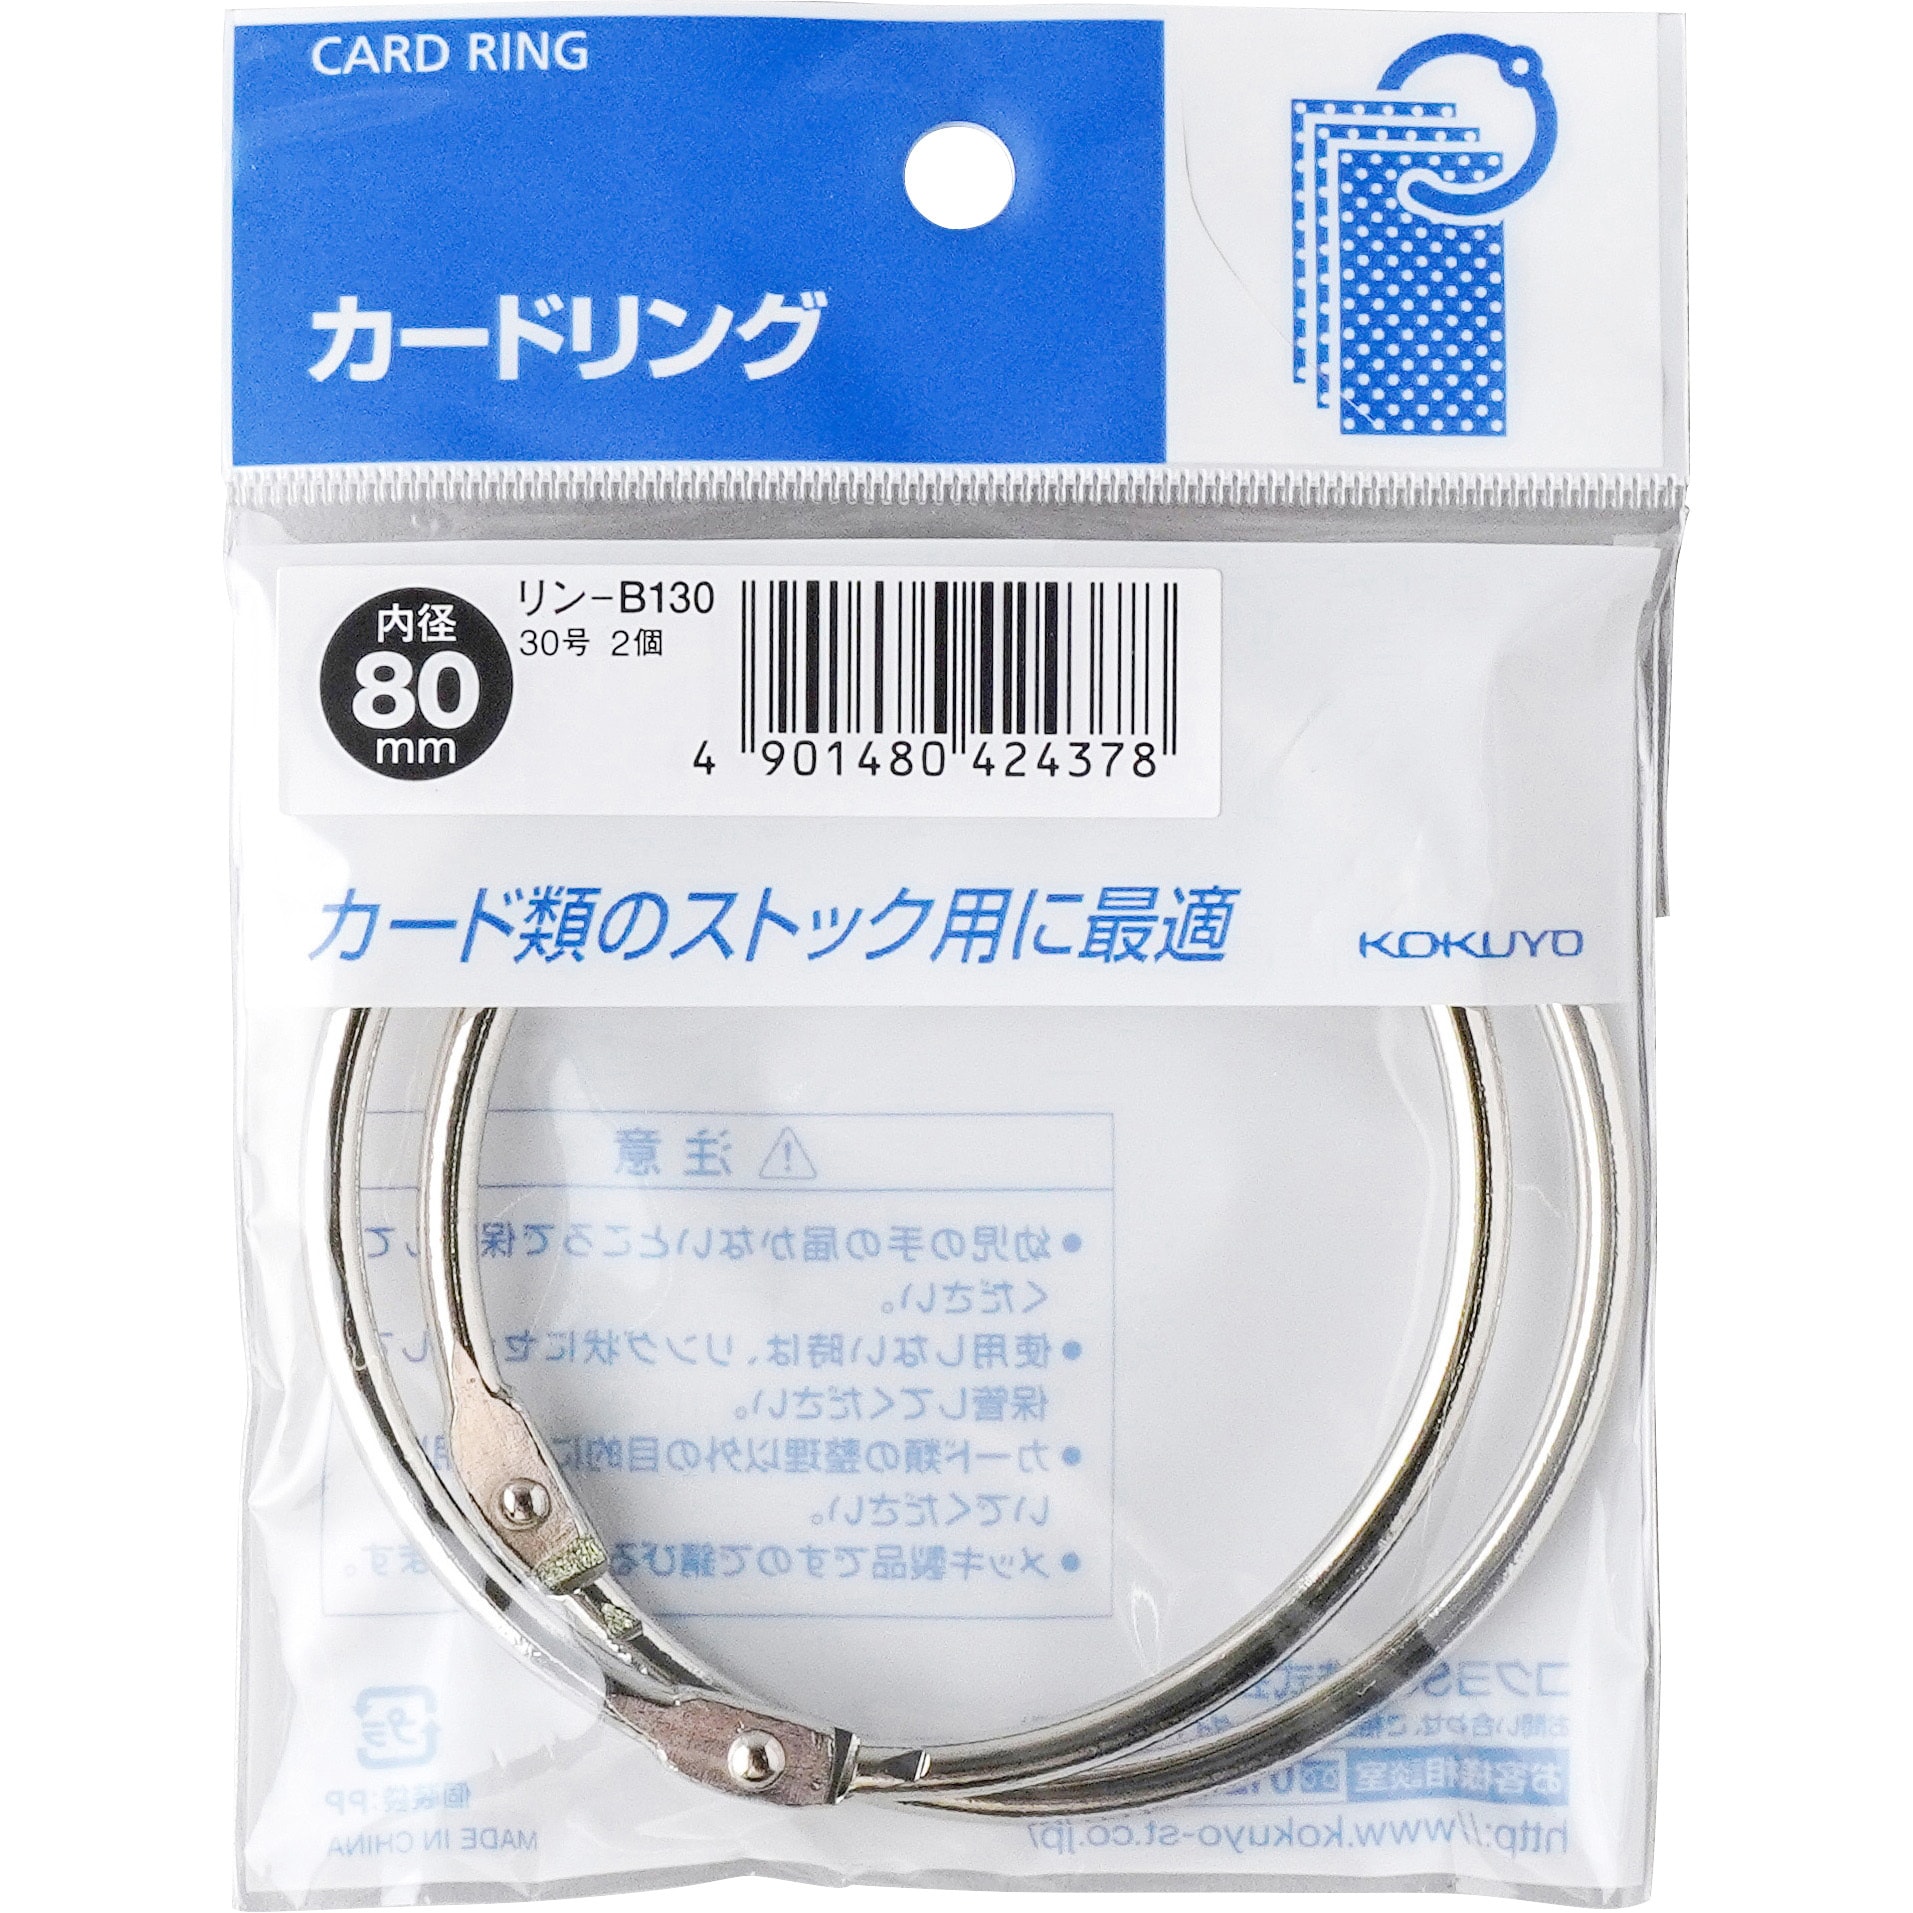 リン-B130 カードリング(パック入り) 1パック(2個) コクヨ 【通販